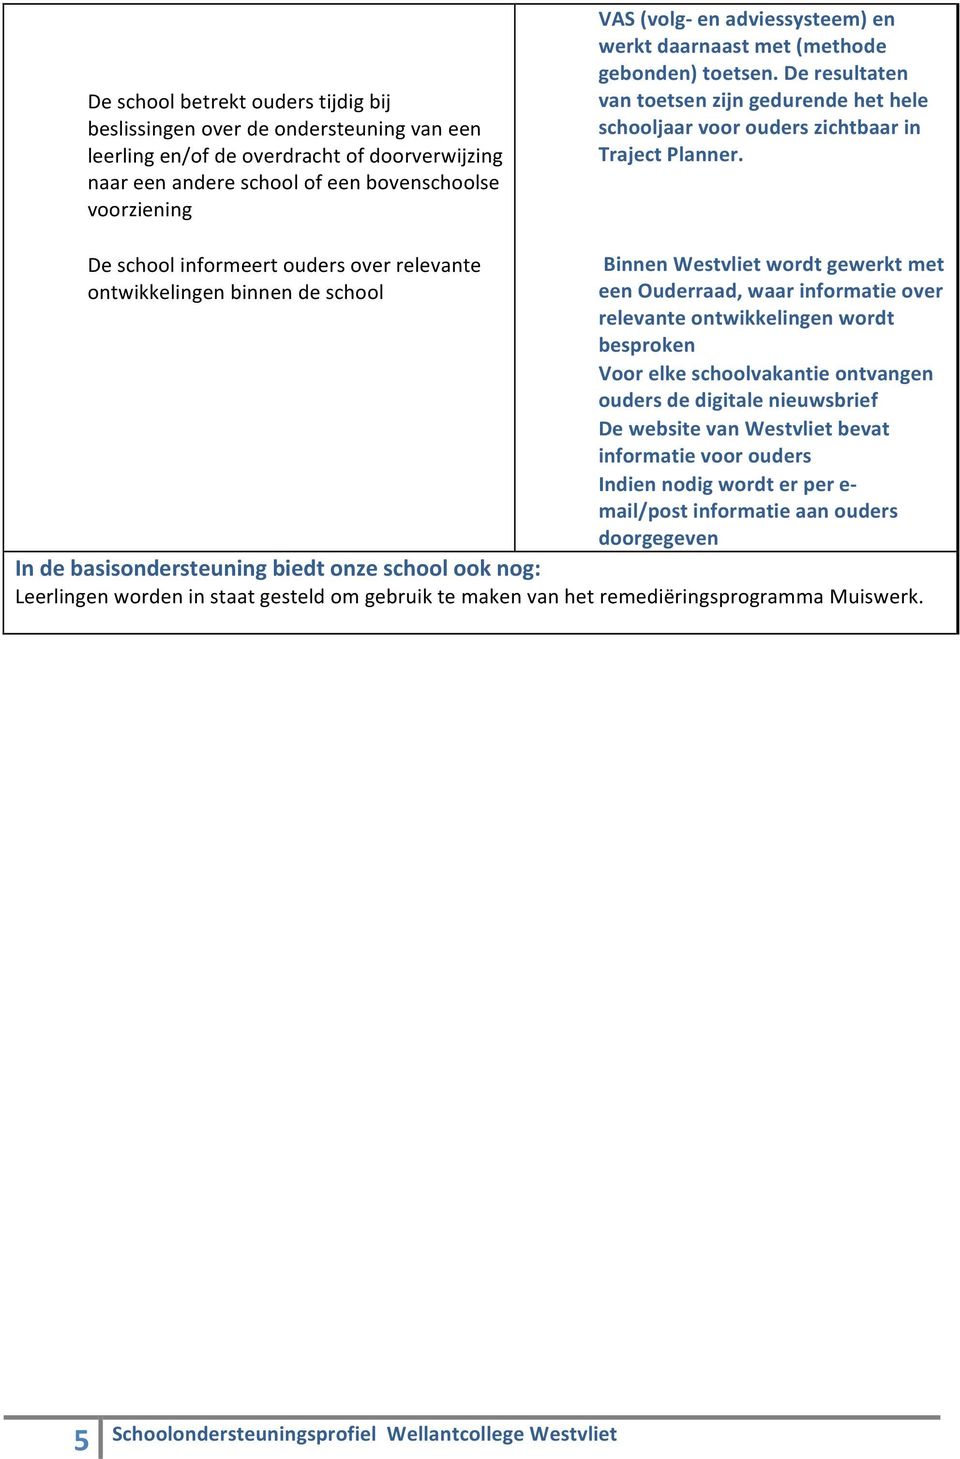 De school informeert ouders over relevante ontwikkelingen binnen de school Binnen Westvliet wordt gewerkt met een Ouderraad, waar informatie over relevante ontwikkelingen wordt besproken Voor elke